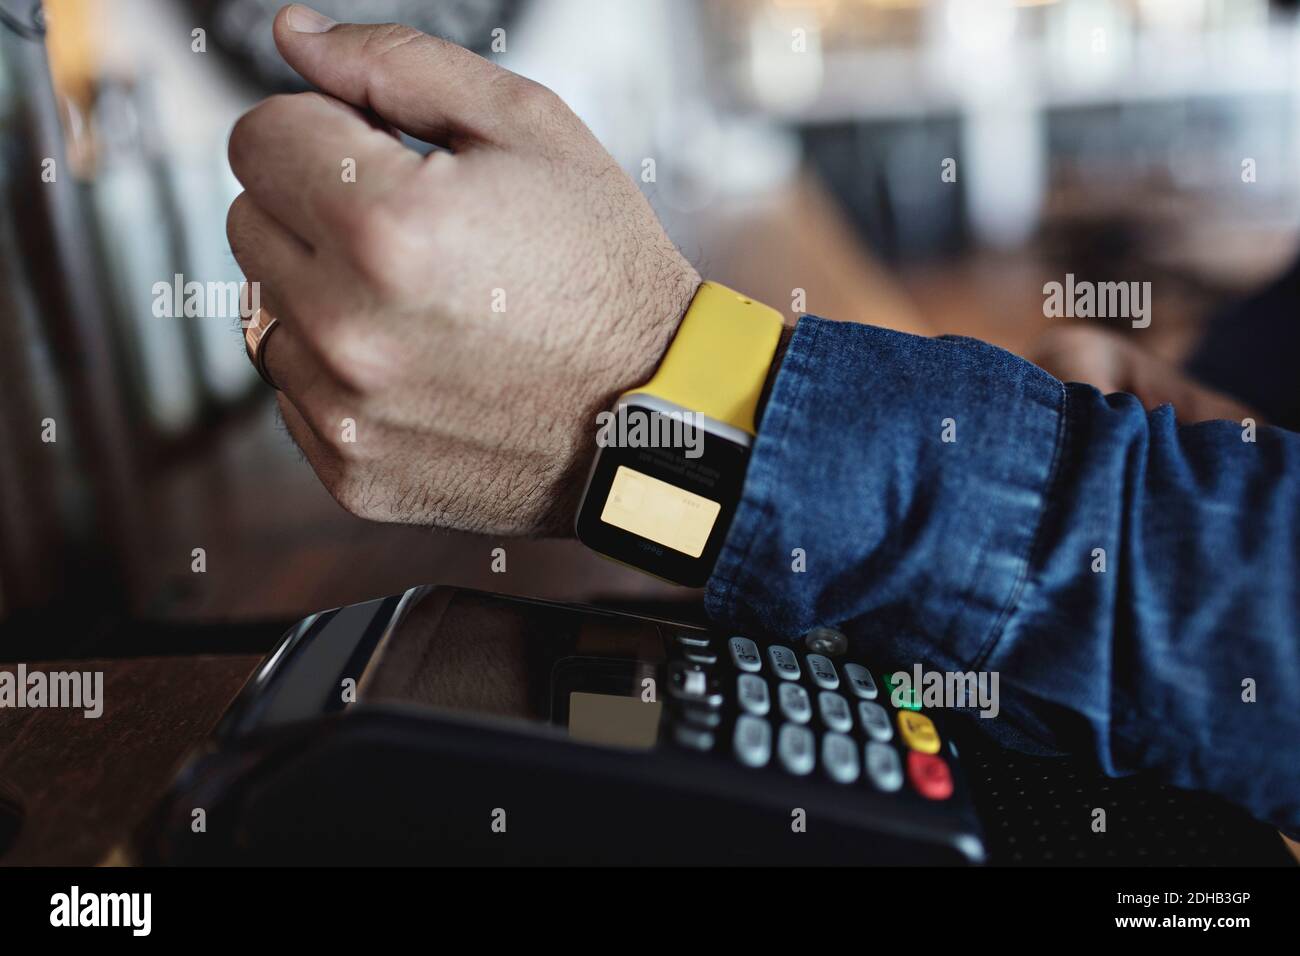 Zugeschnittenes Bild des Kunden, der kontaktlos über Smart Watch bezahlt Am Barschalter Stockfoto